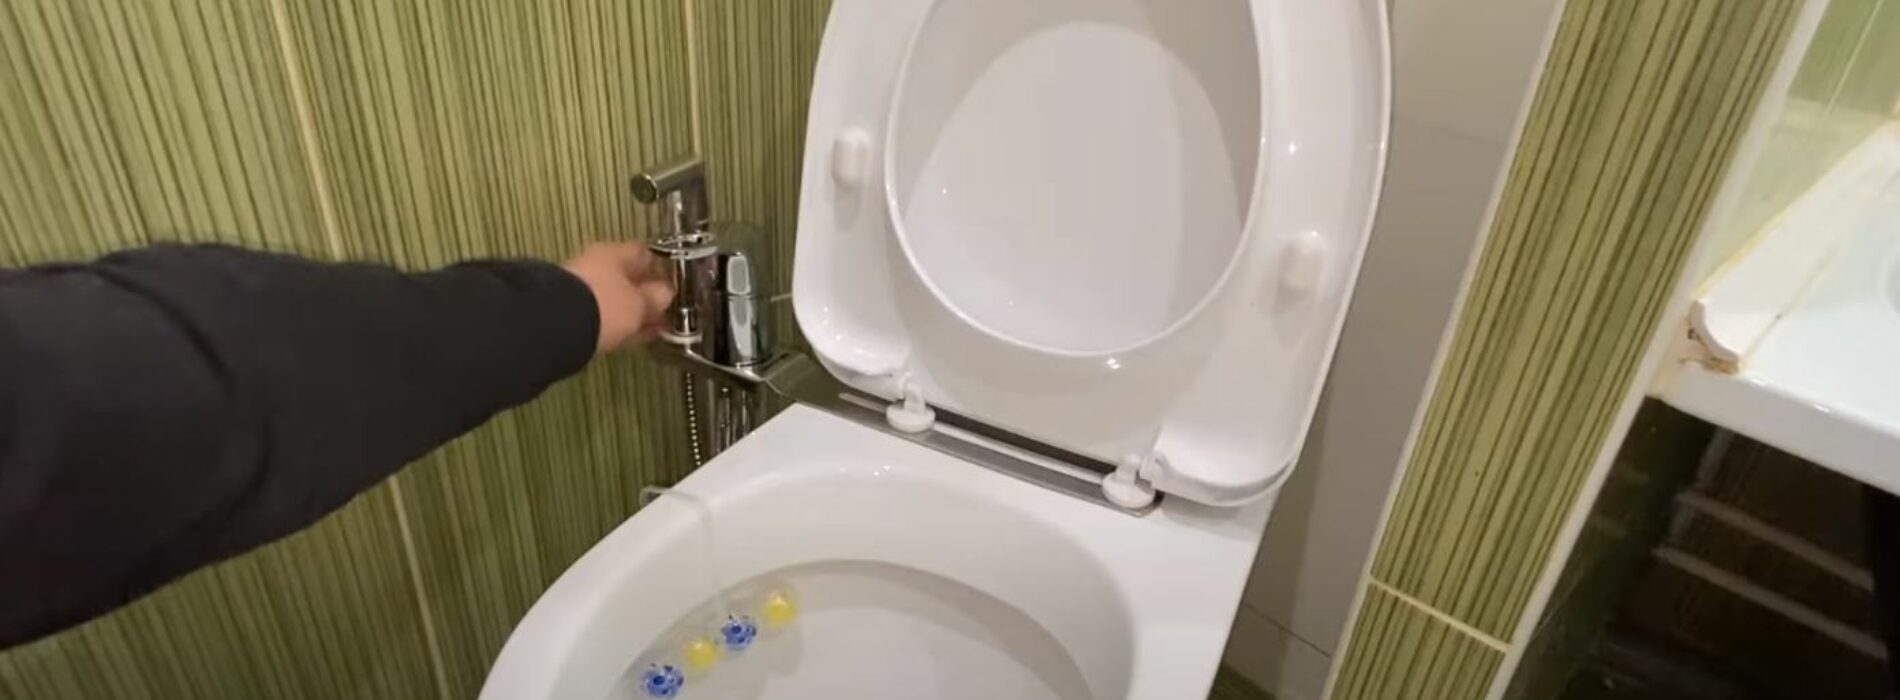 Prysznic higieniczny – to wygodne urządzenie sanitarne